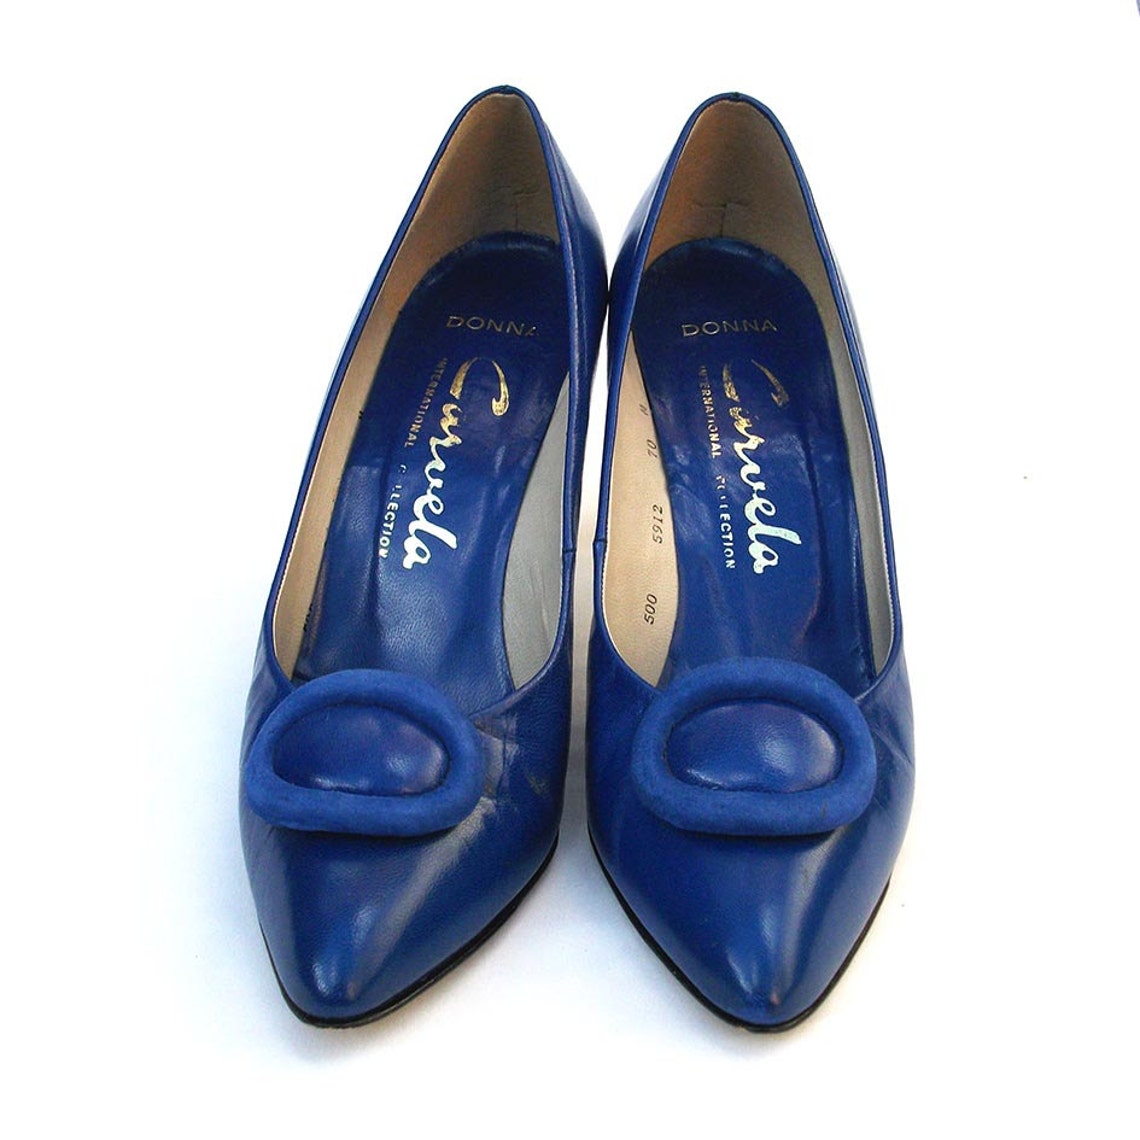 Vintage Blue Shoes Carvela High Heels | Etsy